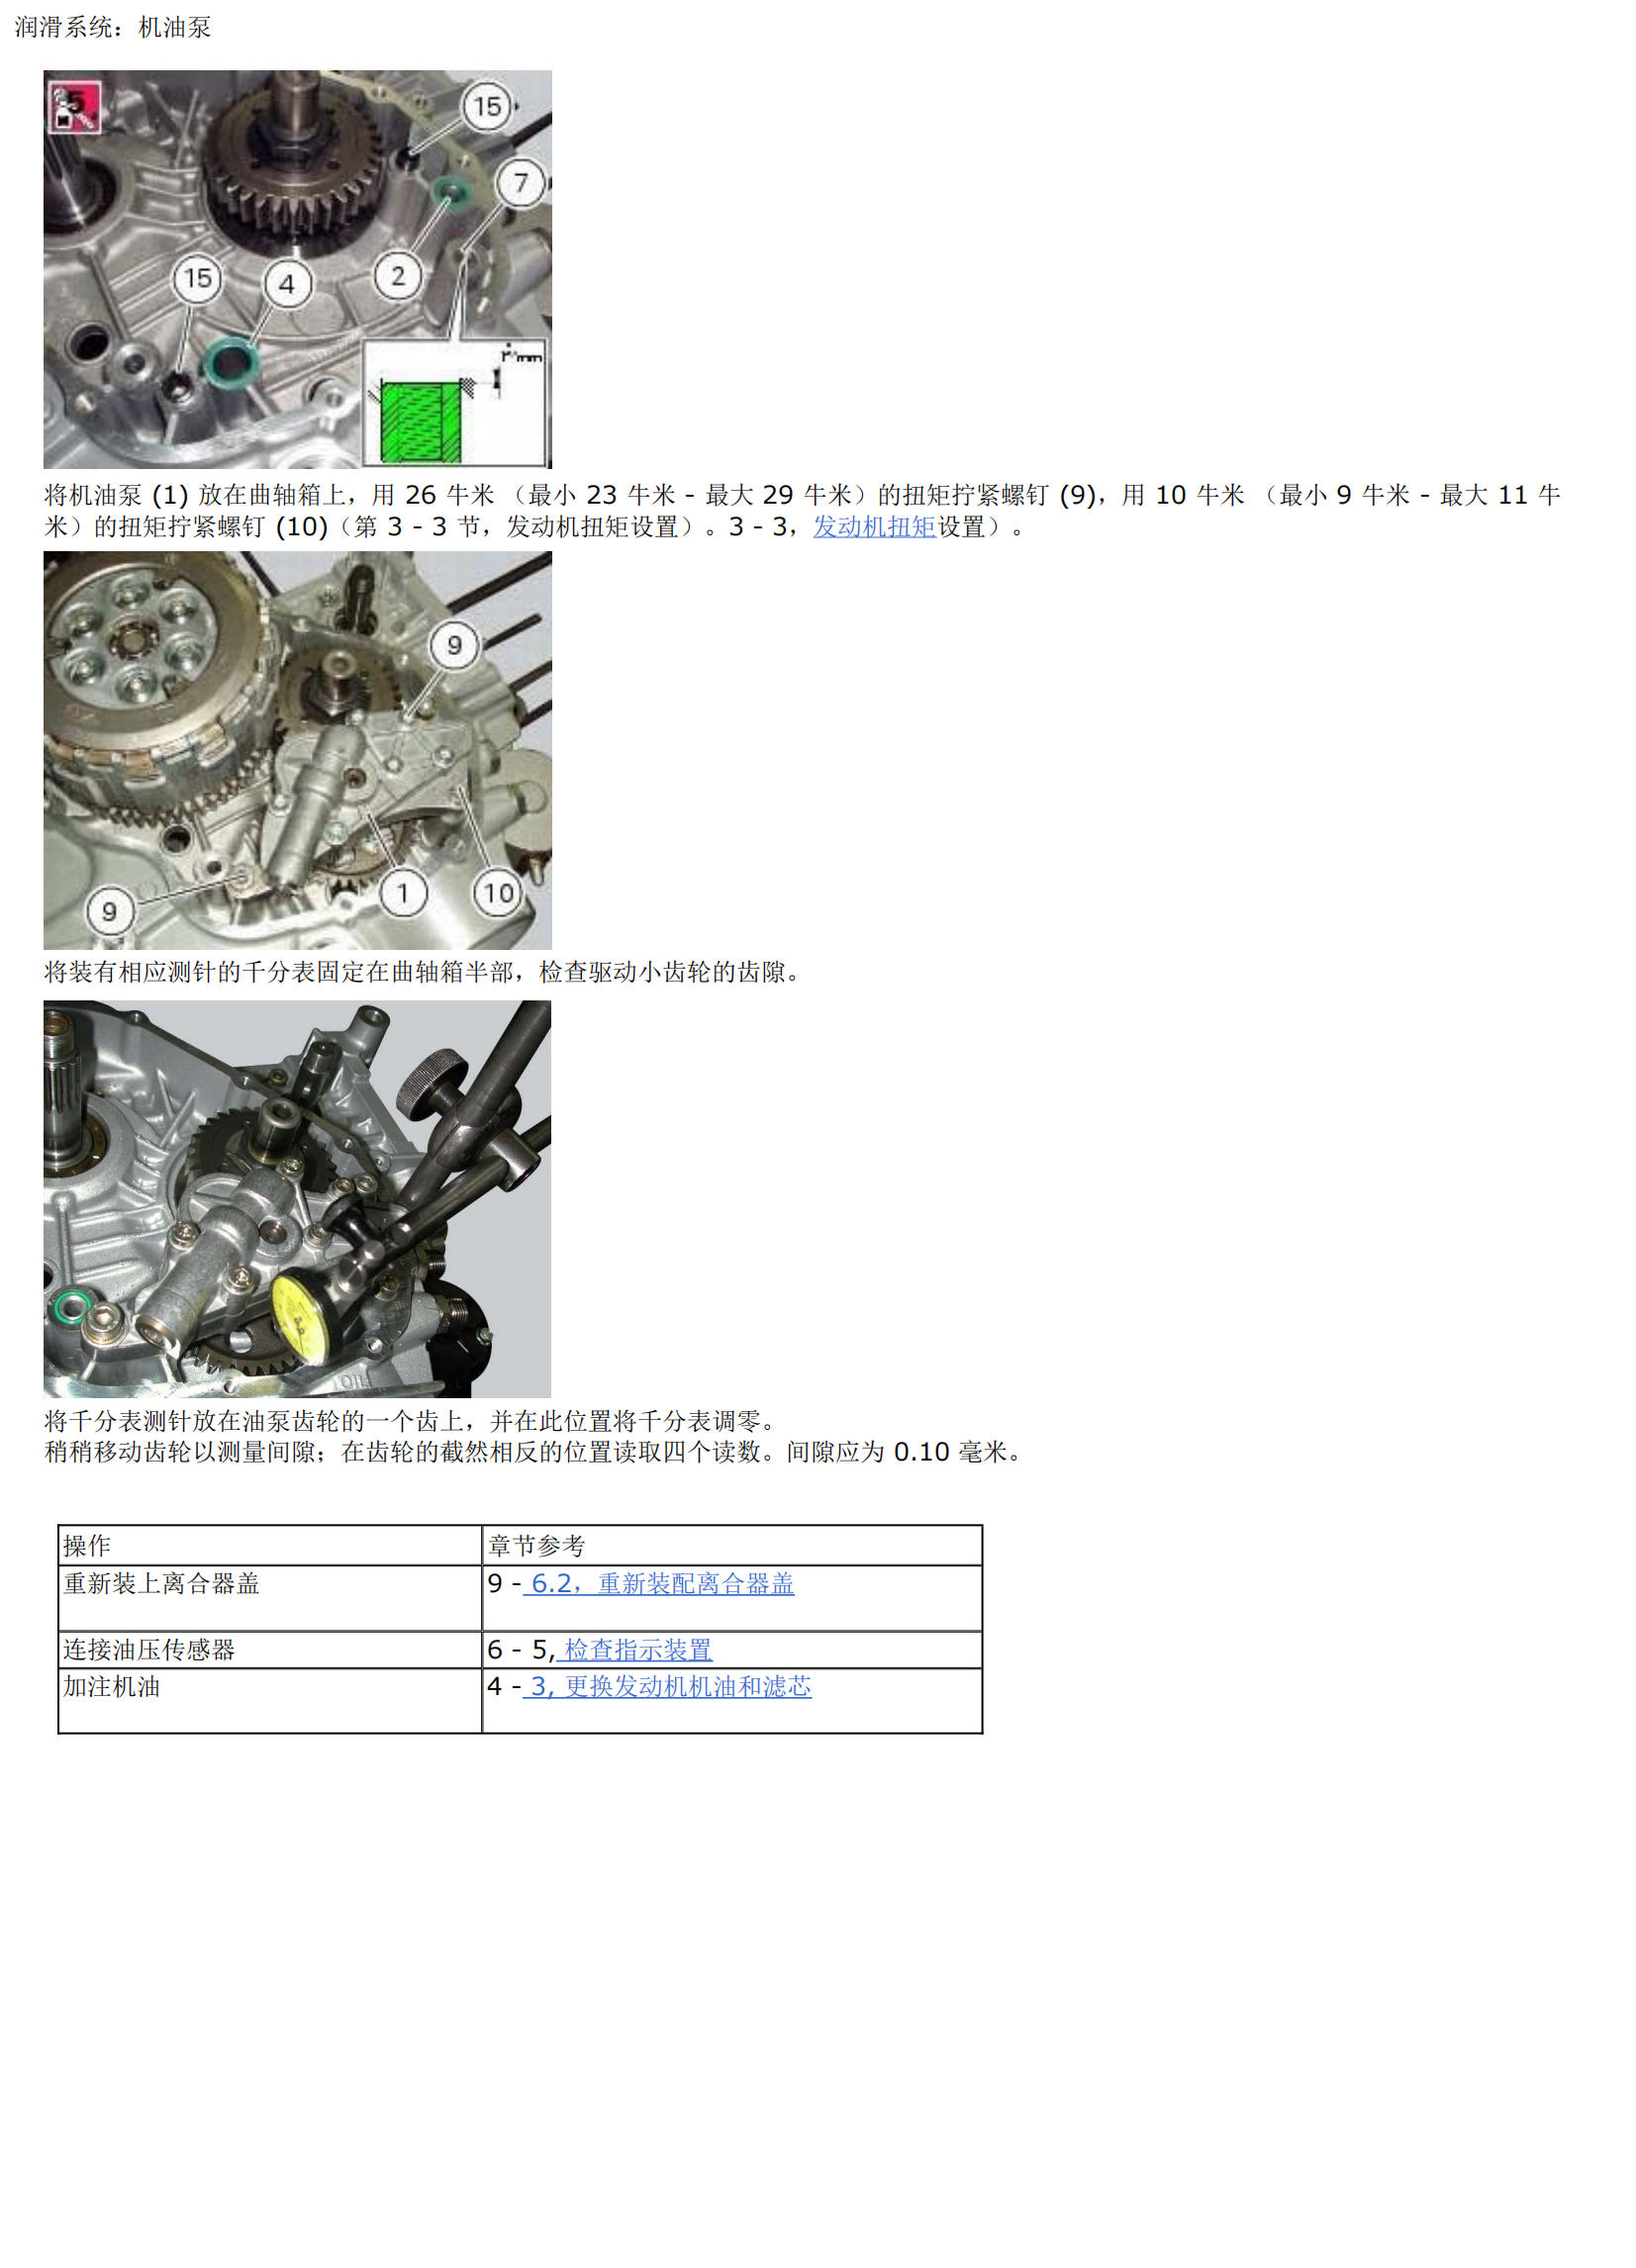 简体中文2010年杜卡迪怪兽796 Ducati Monster 796维修手册插图4